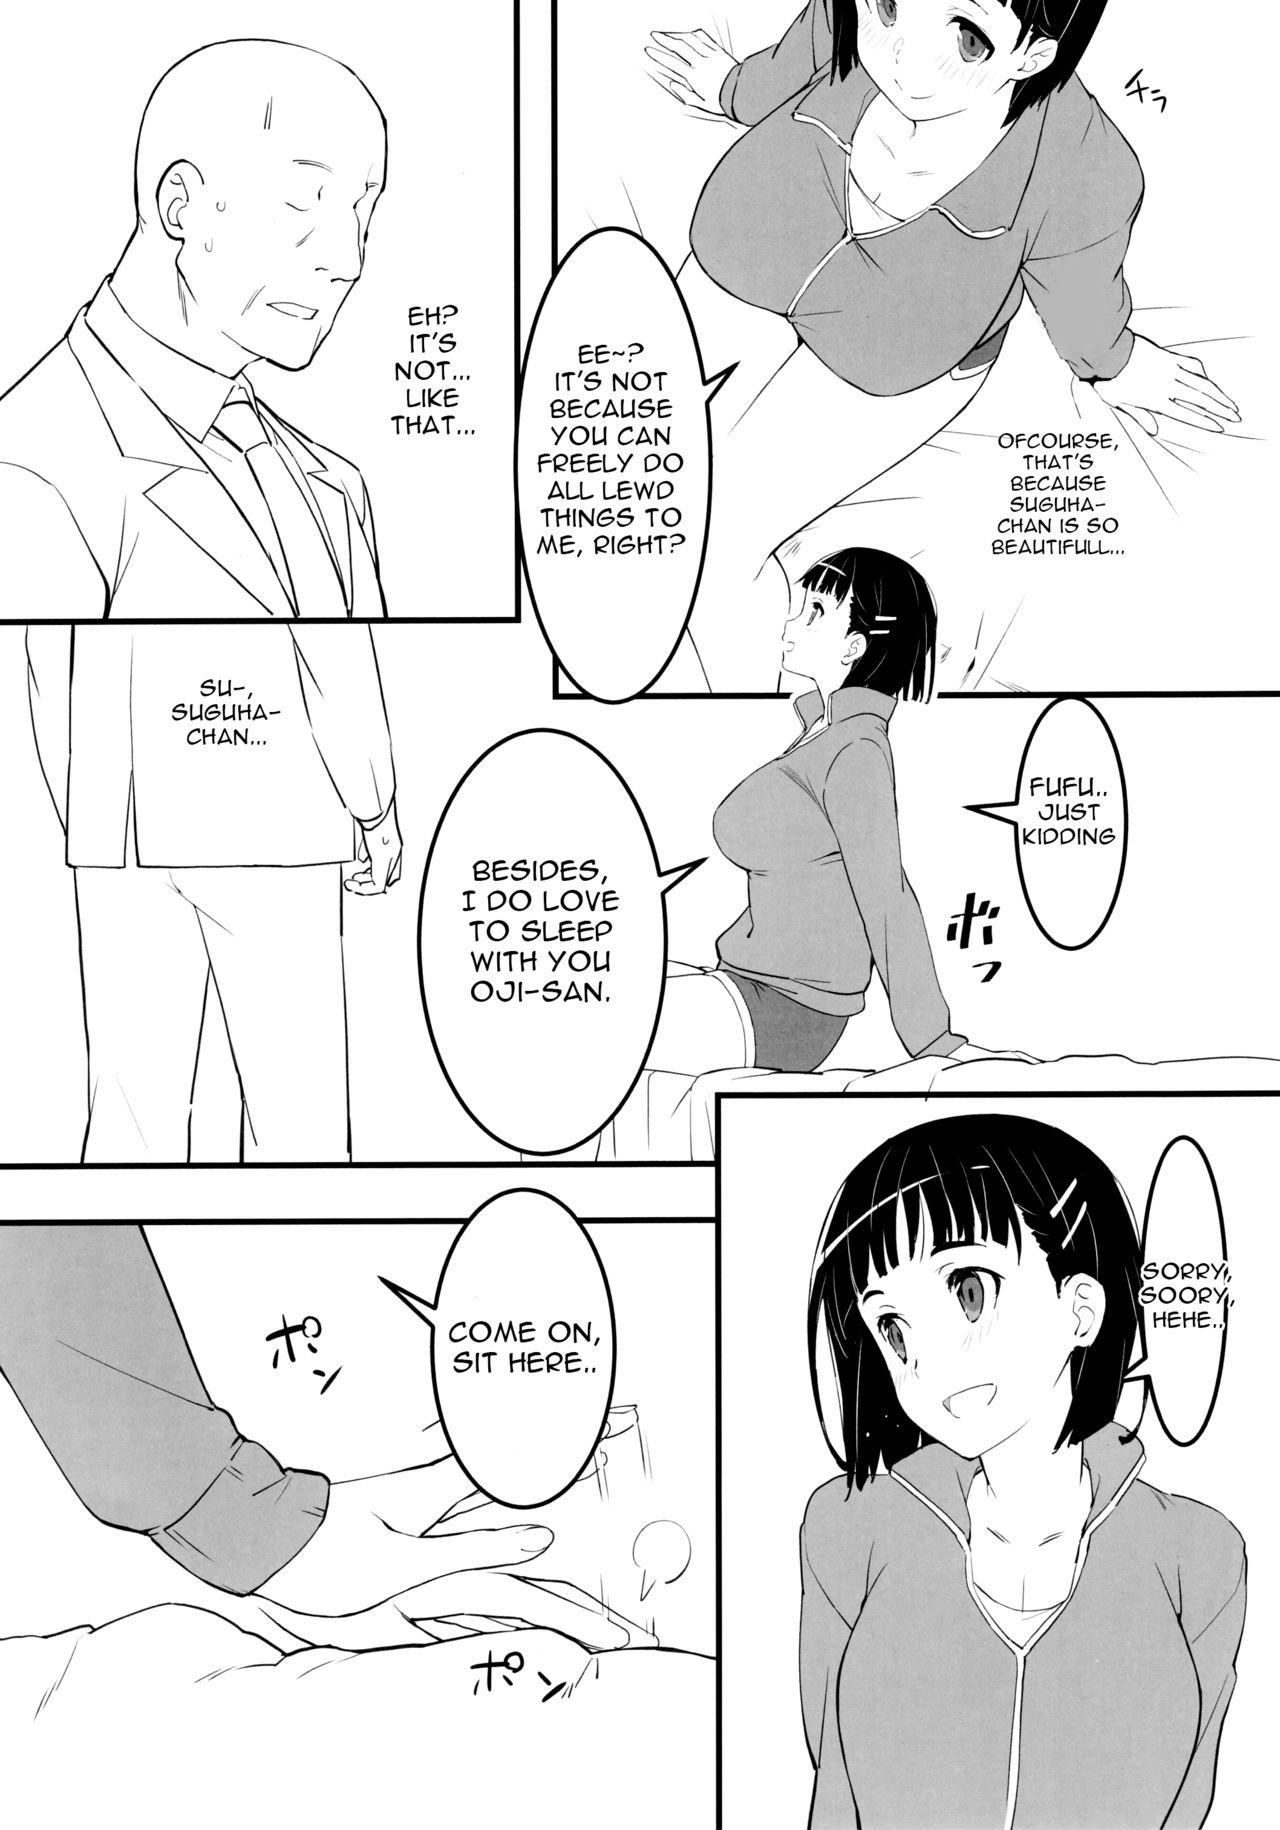 Oji-san's visit to Suguha's bedroom 2